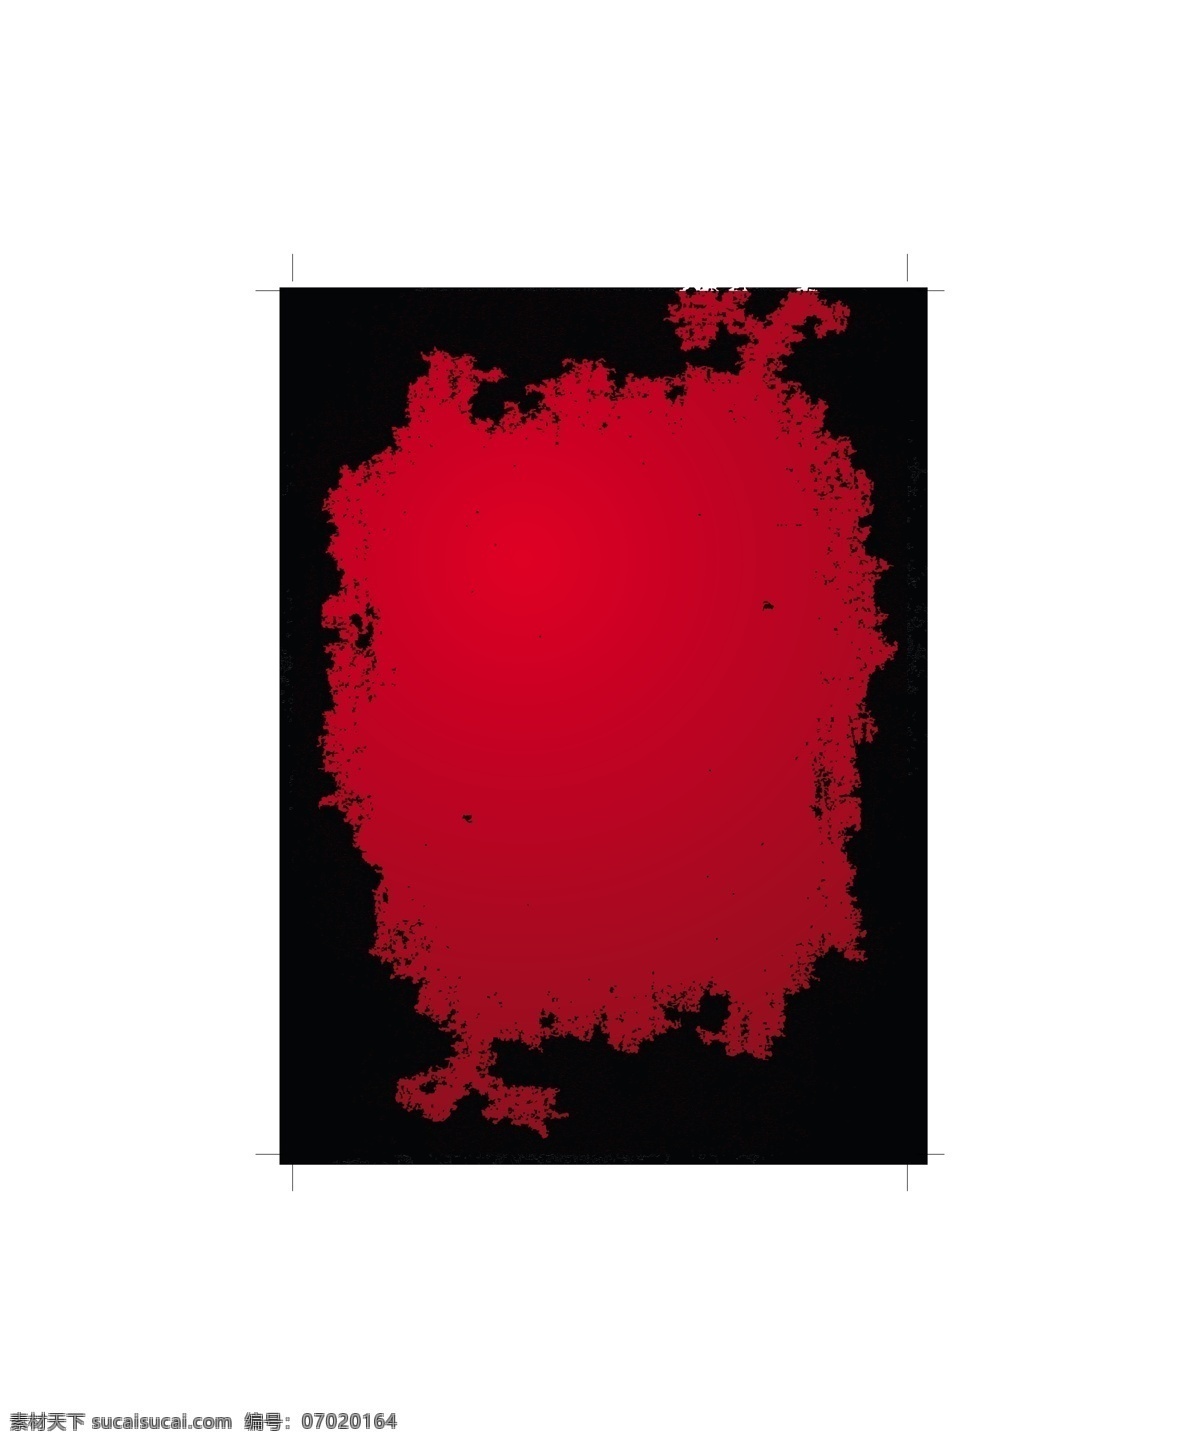 粗糙 红 黑 机理 红黑色 经典复古 溶解 矢量图 花纹花边